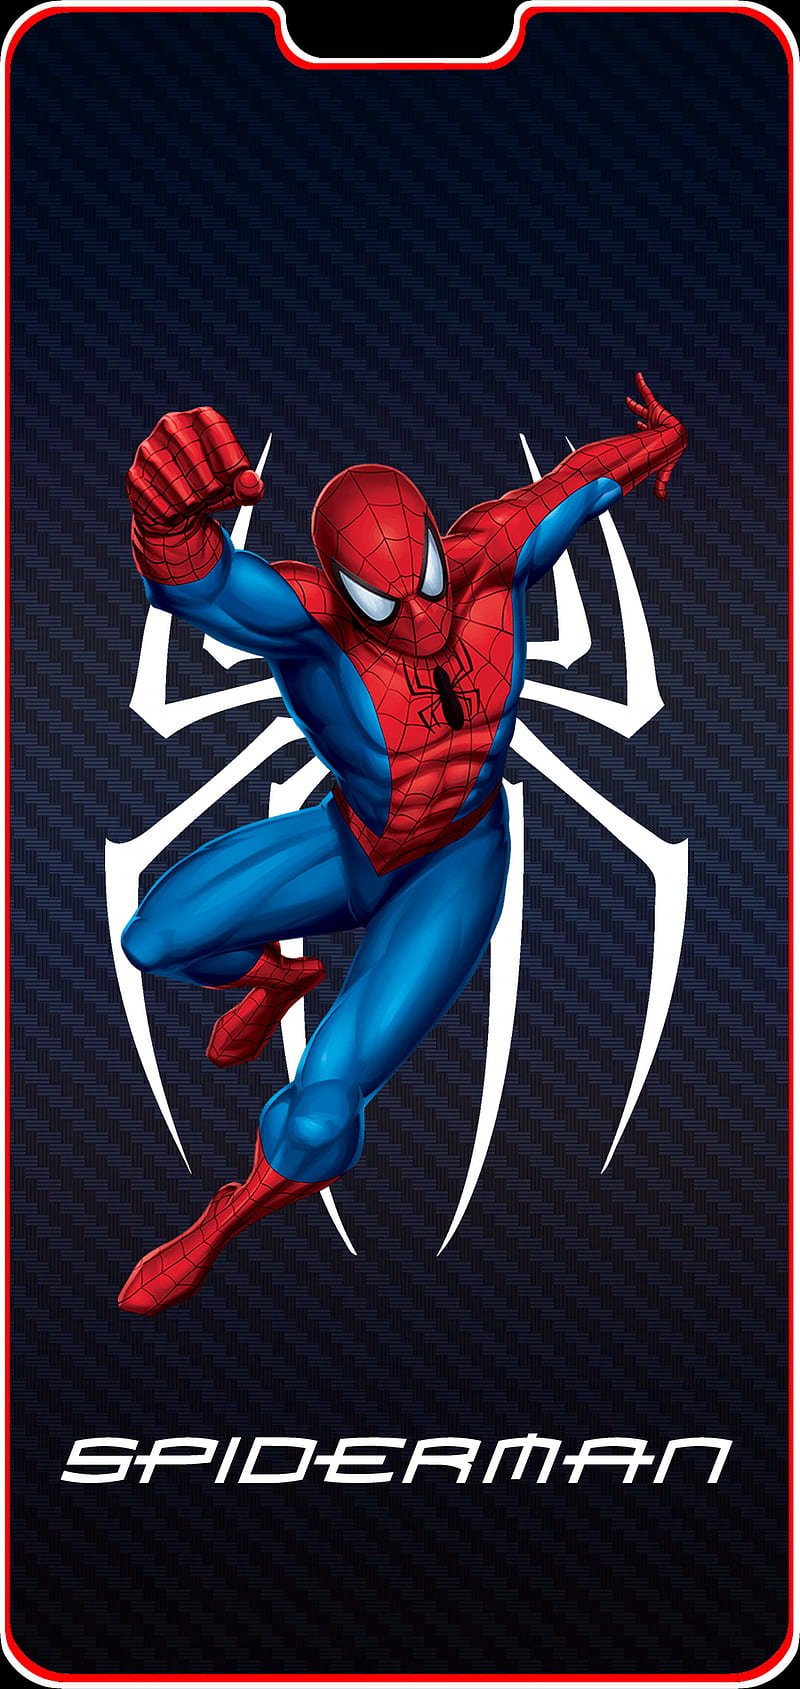 Spiderman OnePlus 6, spiderman line, spiderman oneplus, oneplus line, oneplus 6, HD phone wallpaper